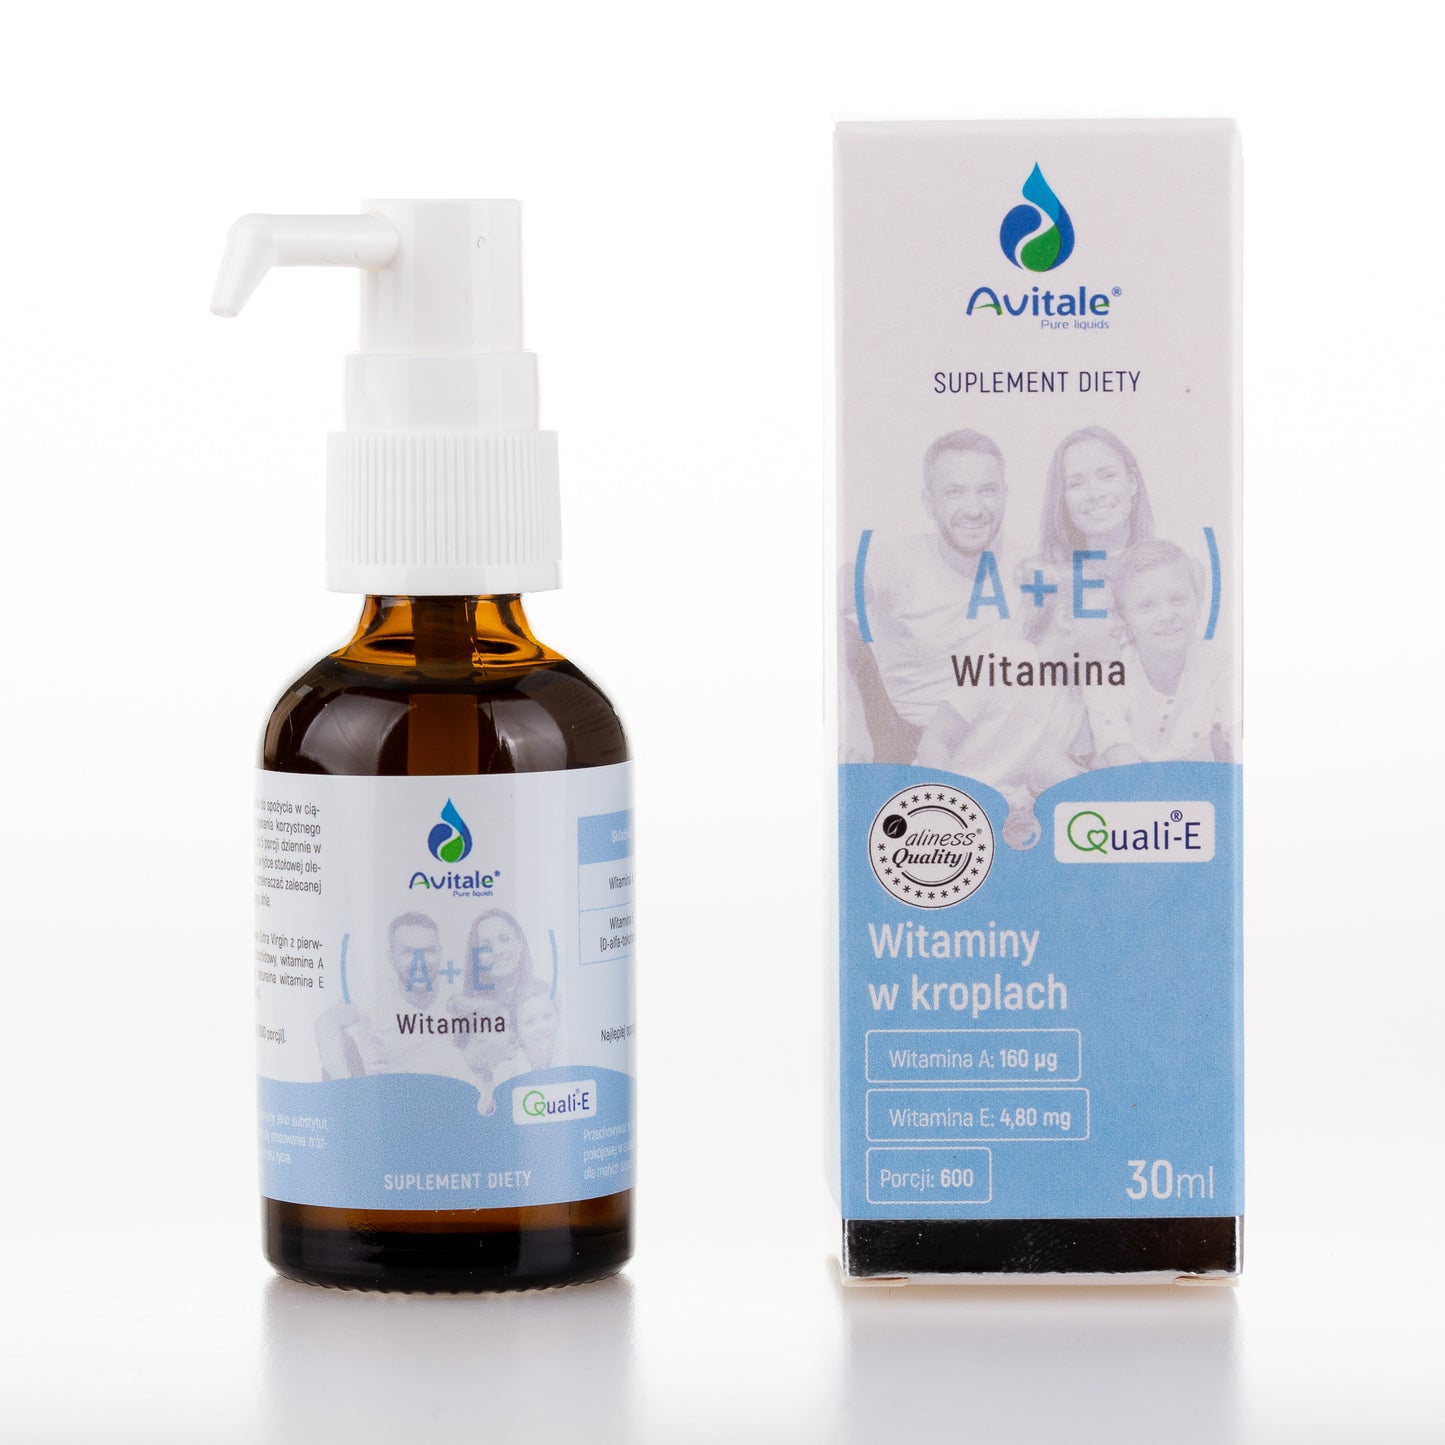 Avitale liquid Vitamin A + E in drops, 30ml